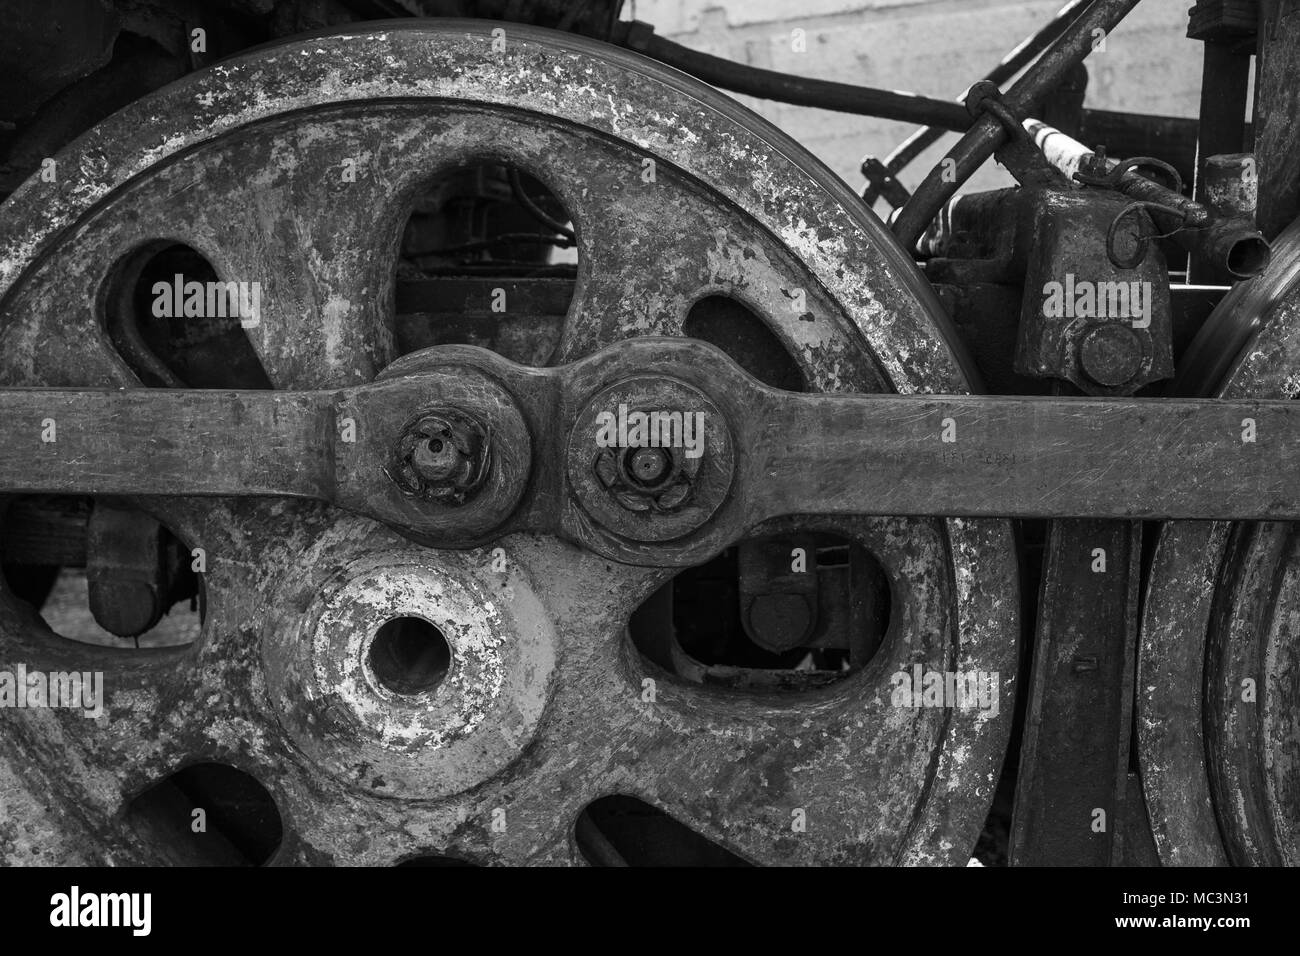 Detailansicht von verwitterten Räder der abgebrochenen alten rostigen sowjetische Lokomotive an der Plattform. Horizontale Schwarz-Weiß-Fotografie. Stockfoto